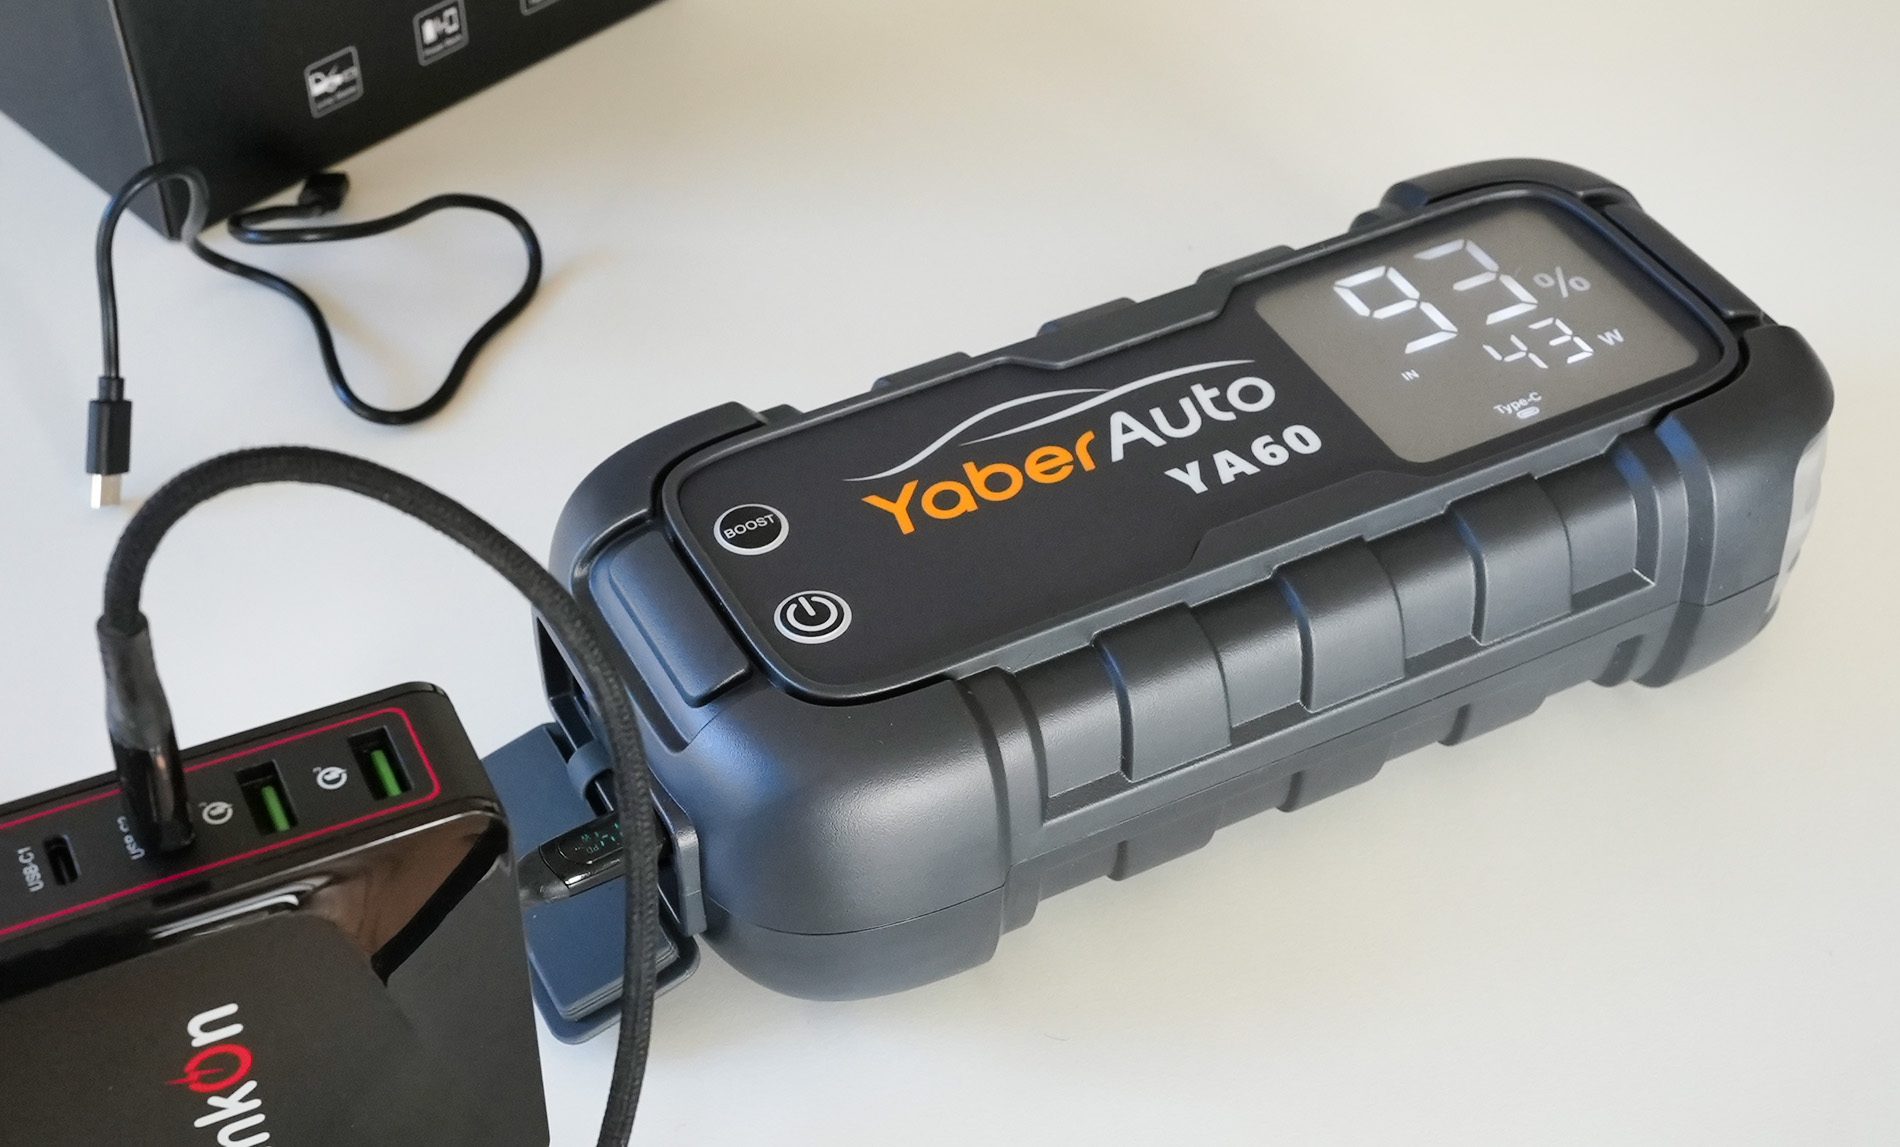 Die YaberAuto YA60 Starthilfe-Powerbank lässt sich mit 45 Watt Leistung aufladen, wenn man ein entsprechendes Netzteil anschließt.